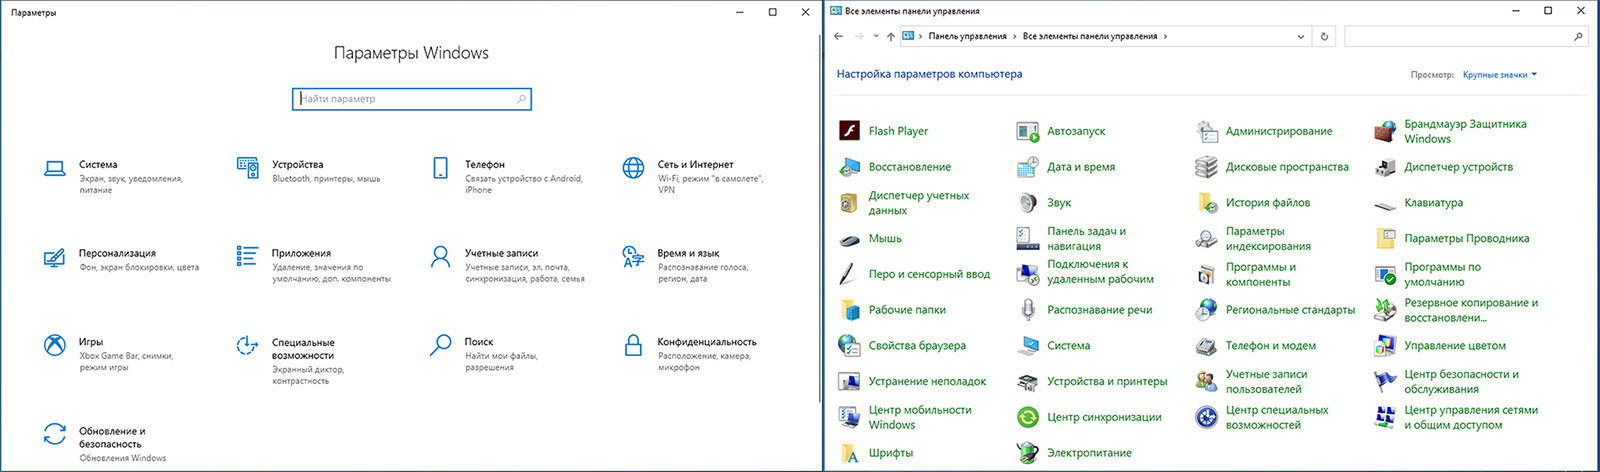 два приложения с настройками в Windows 10